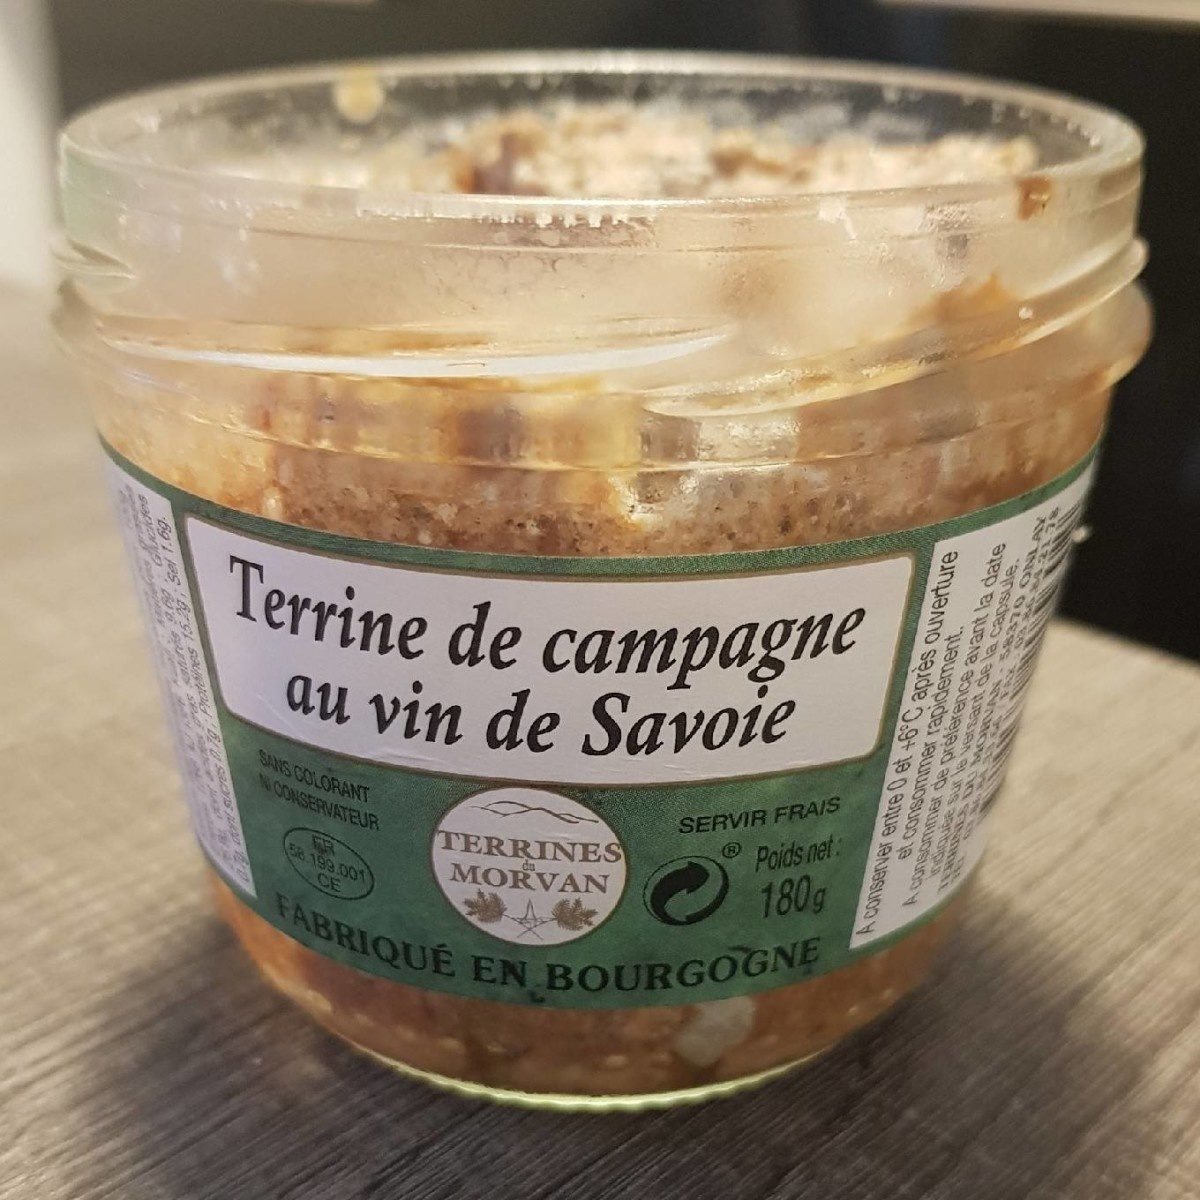 Terrine de Campagne au vin de Savoie - Product - fr